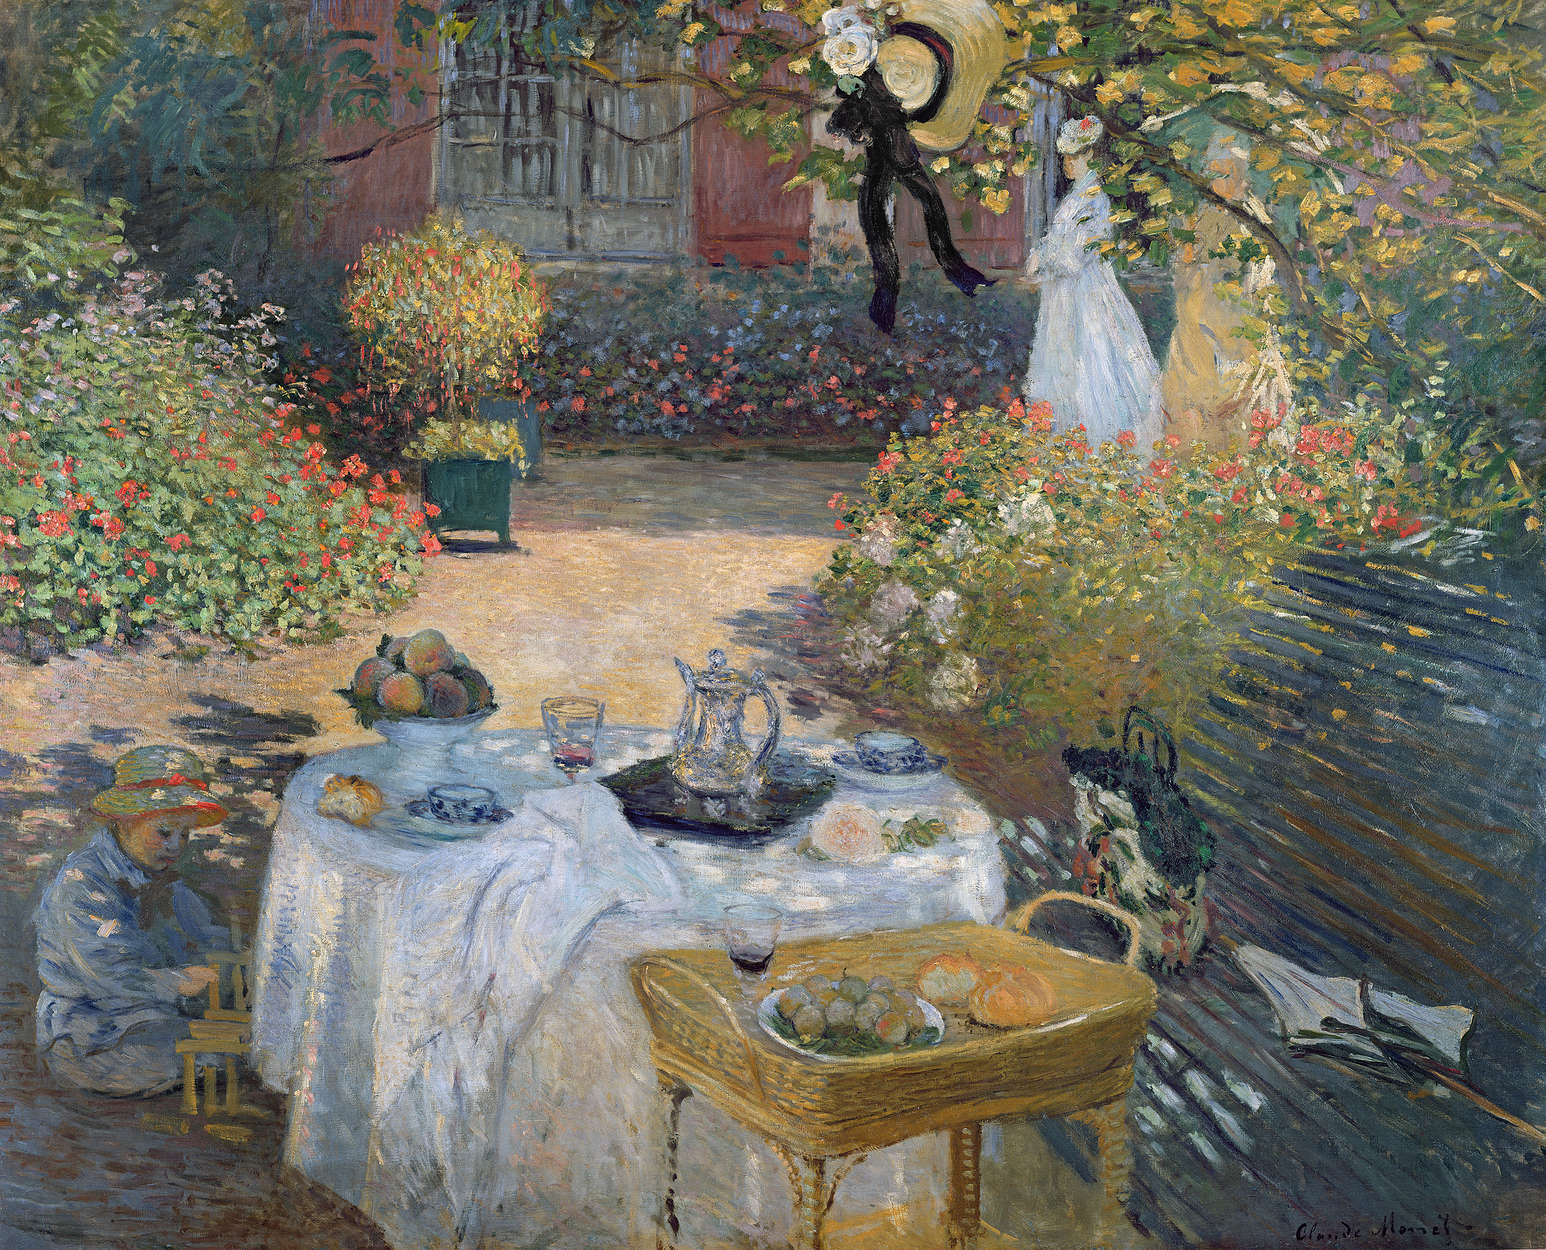             Mural "La comida del mediodía: el jardín de Monet en Argenteuil" de Claude Monet
        